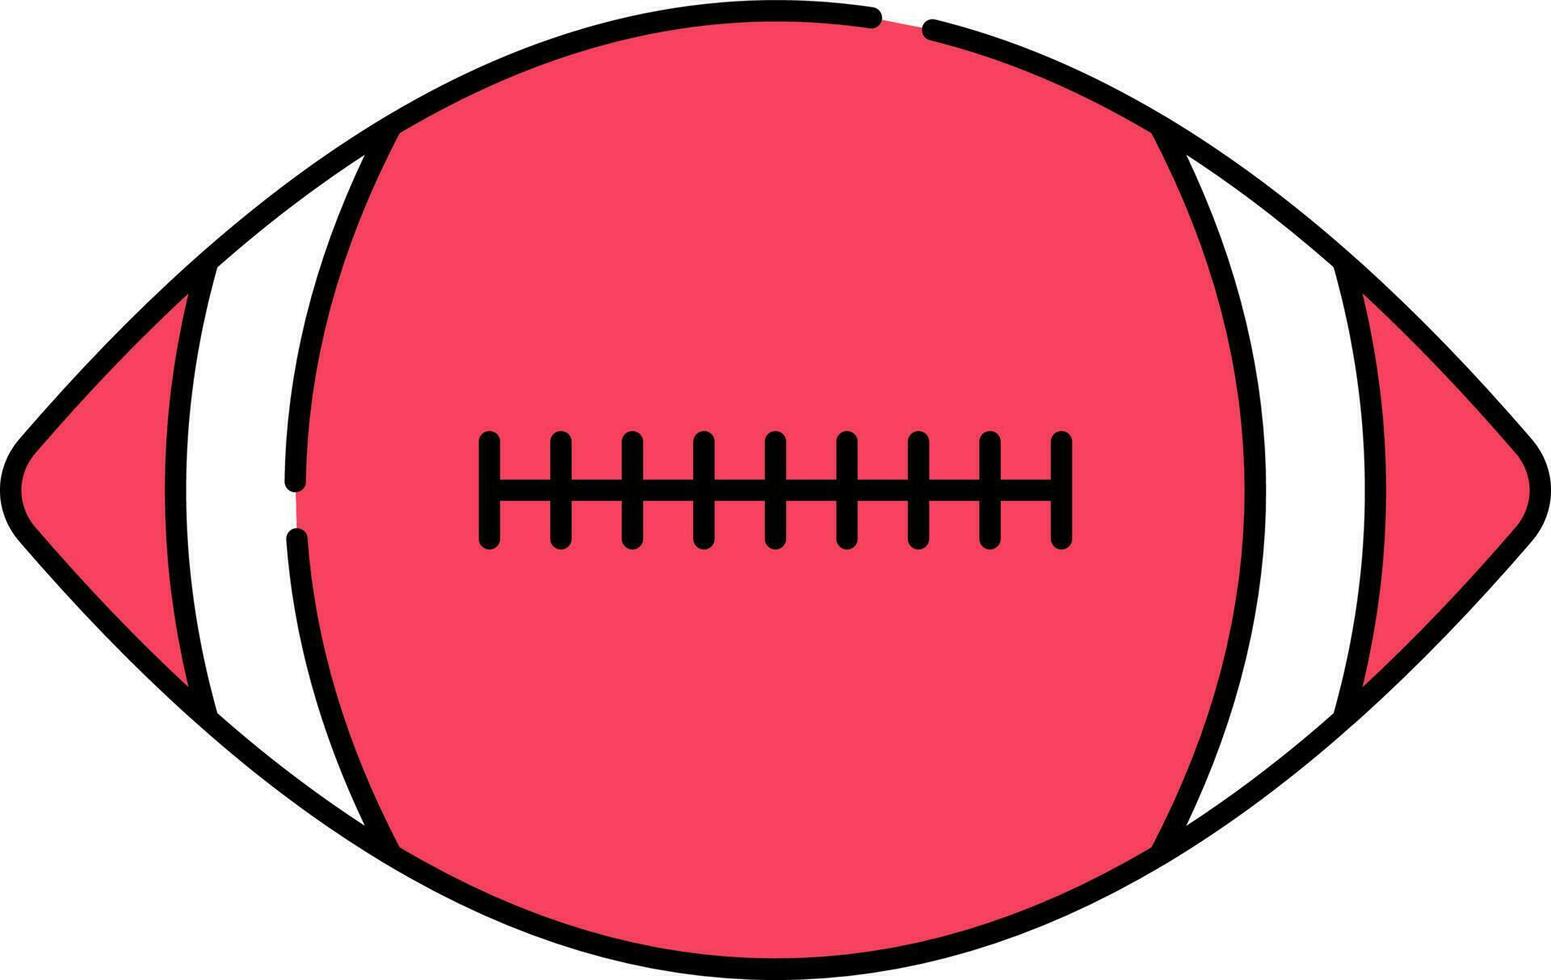 rot und Weiß Illustration von Rugby Ball Symbol. vektor